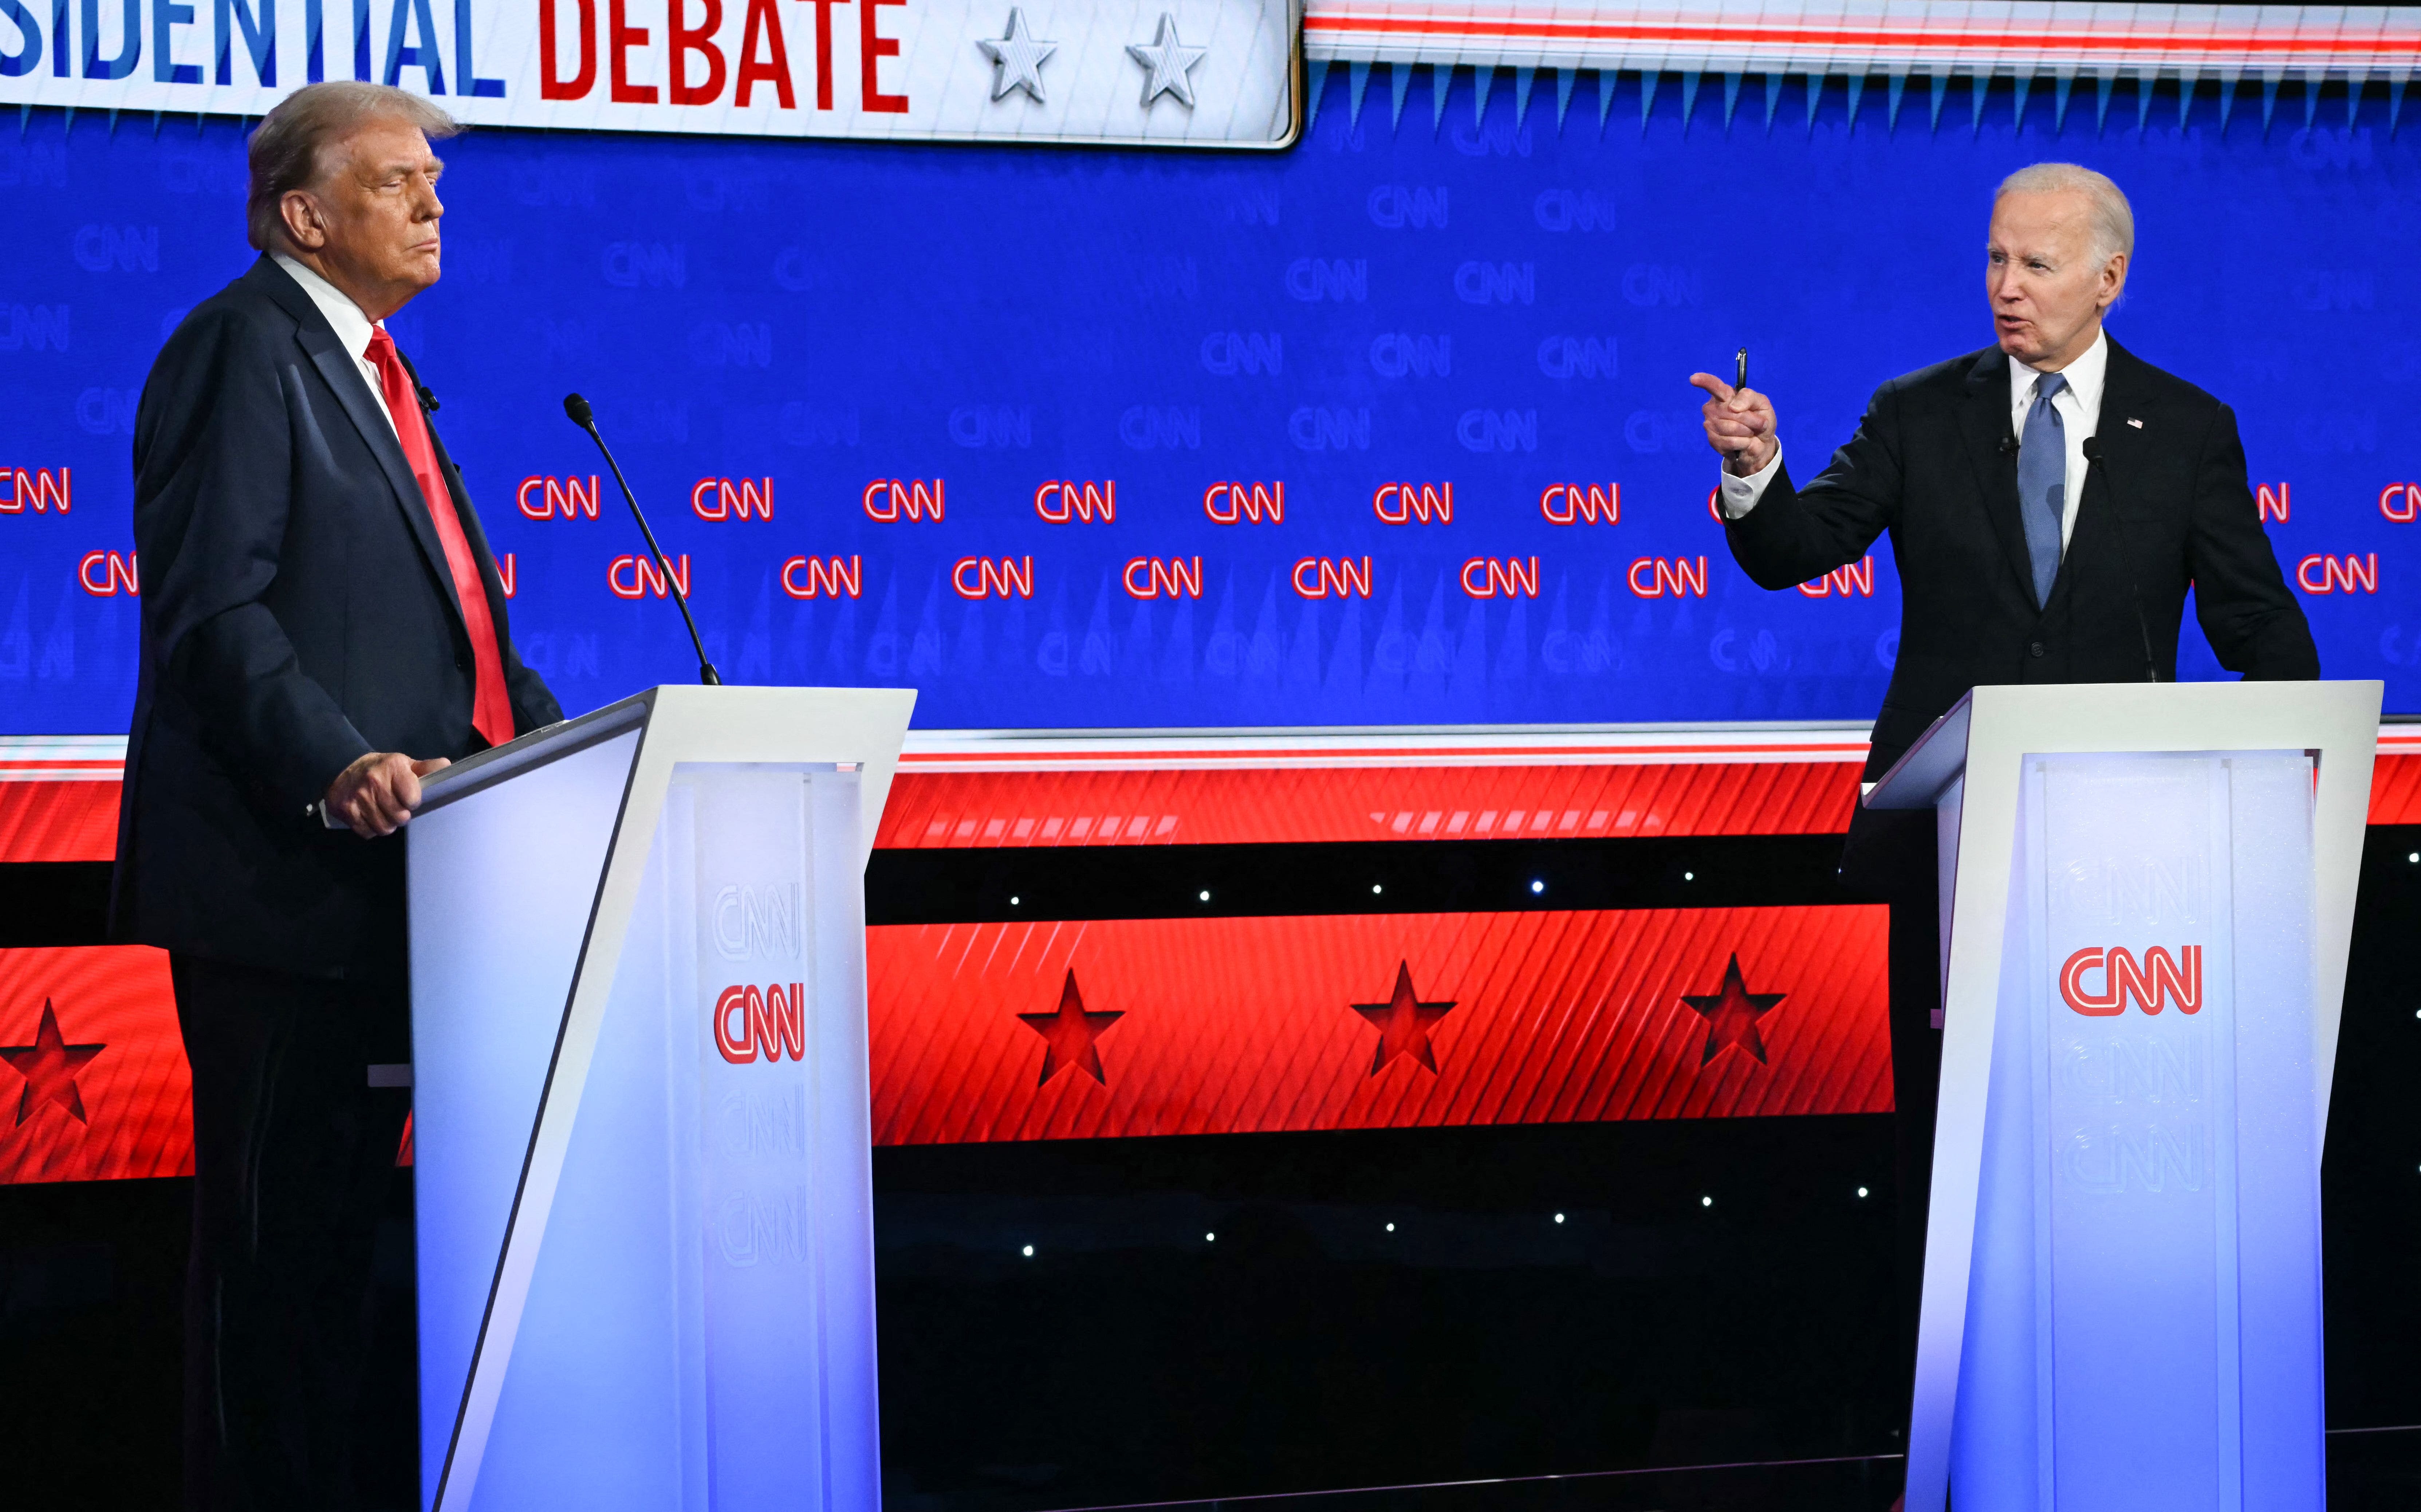 Despite debate debacle, Biden won't bow out | GARY COSBY JR.